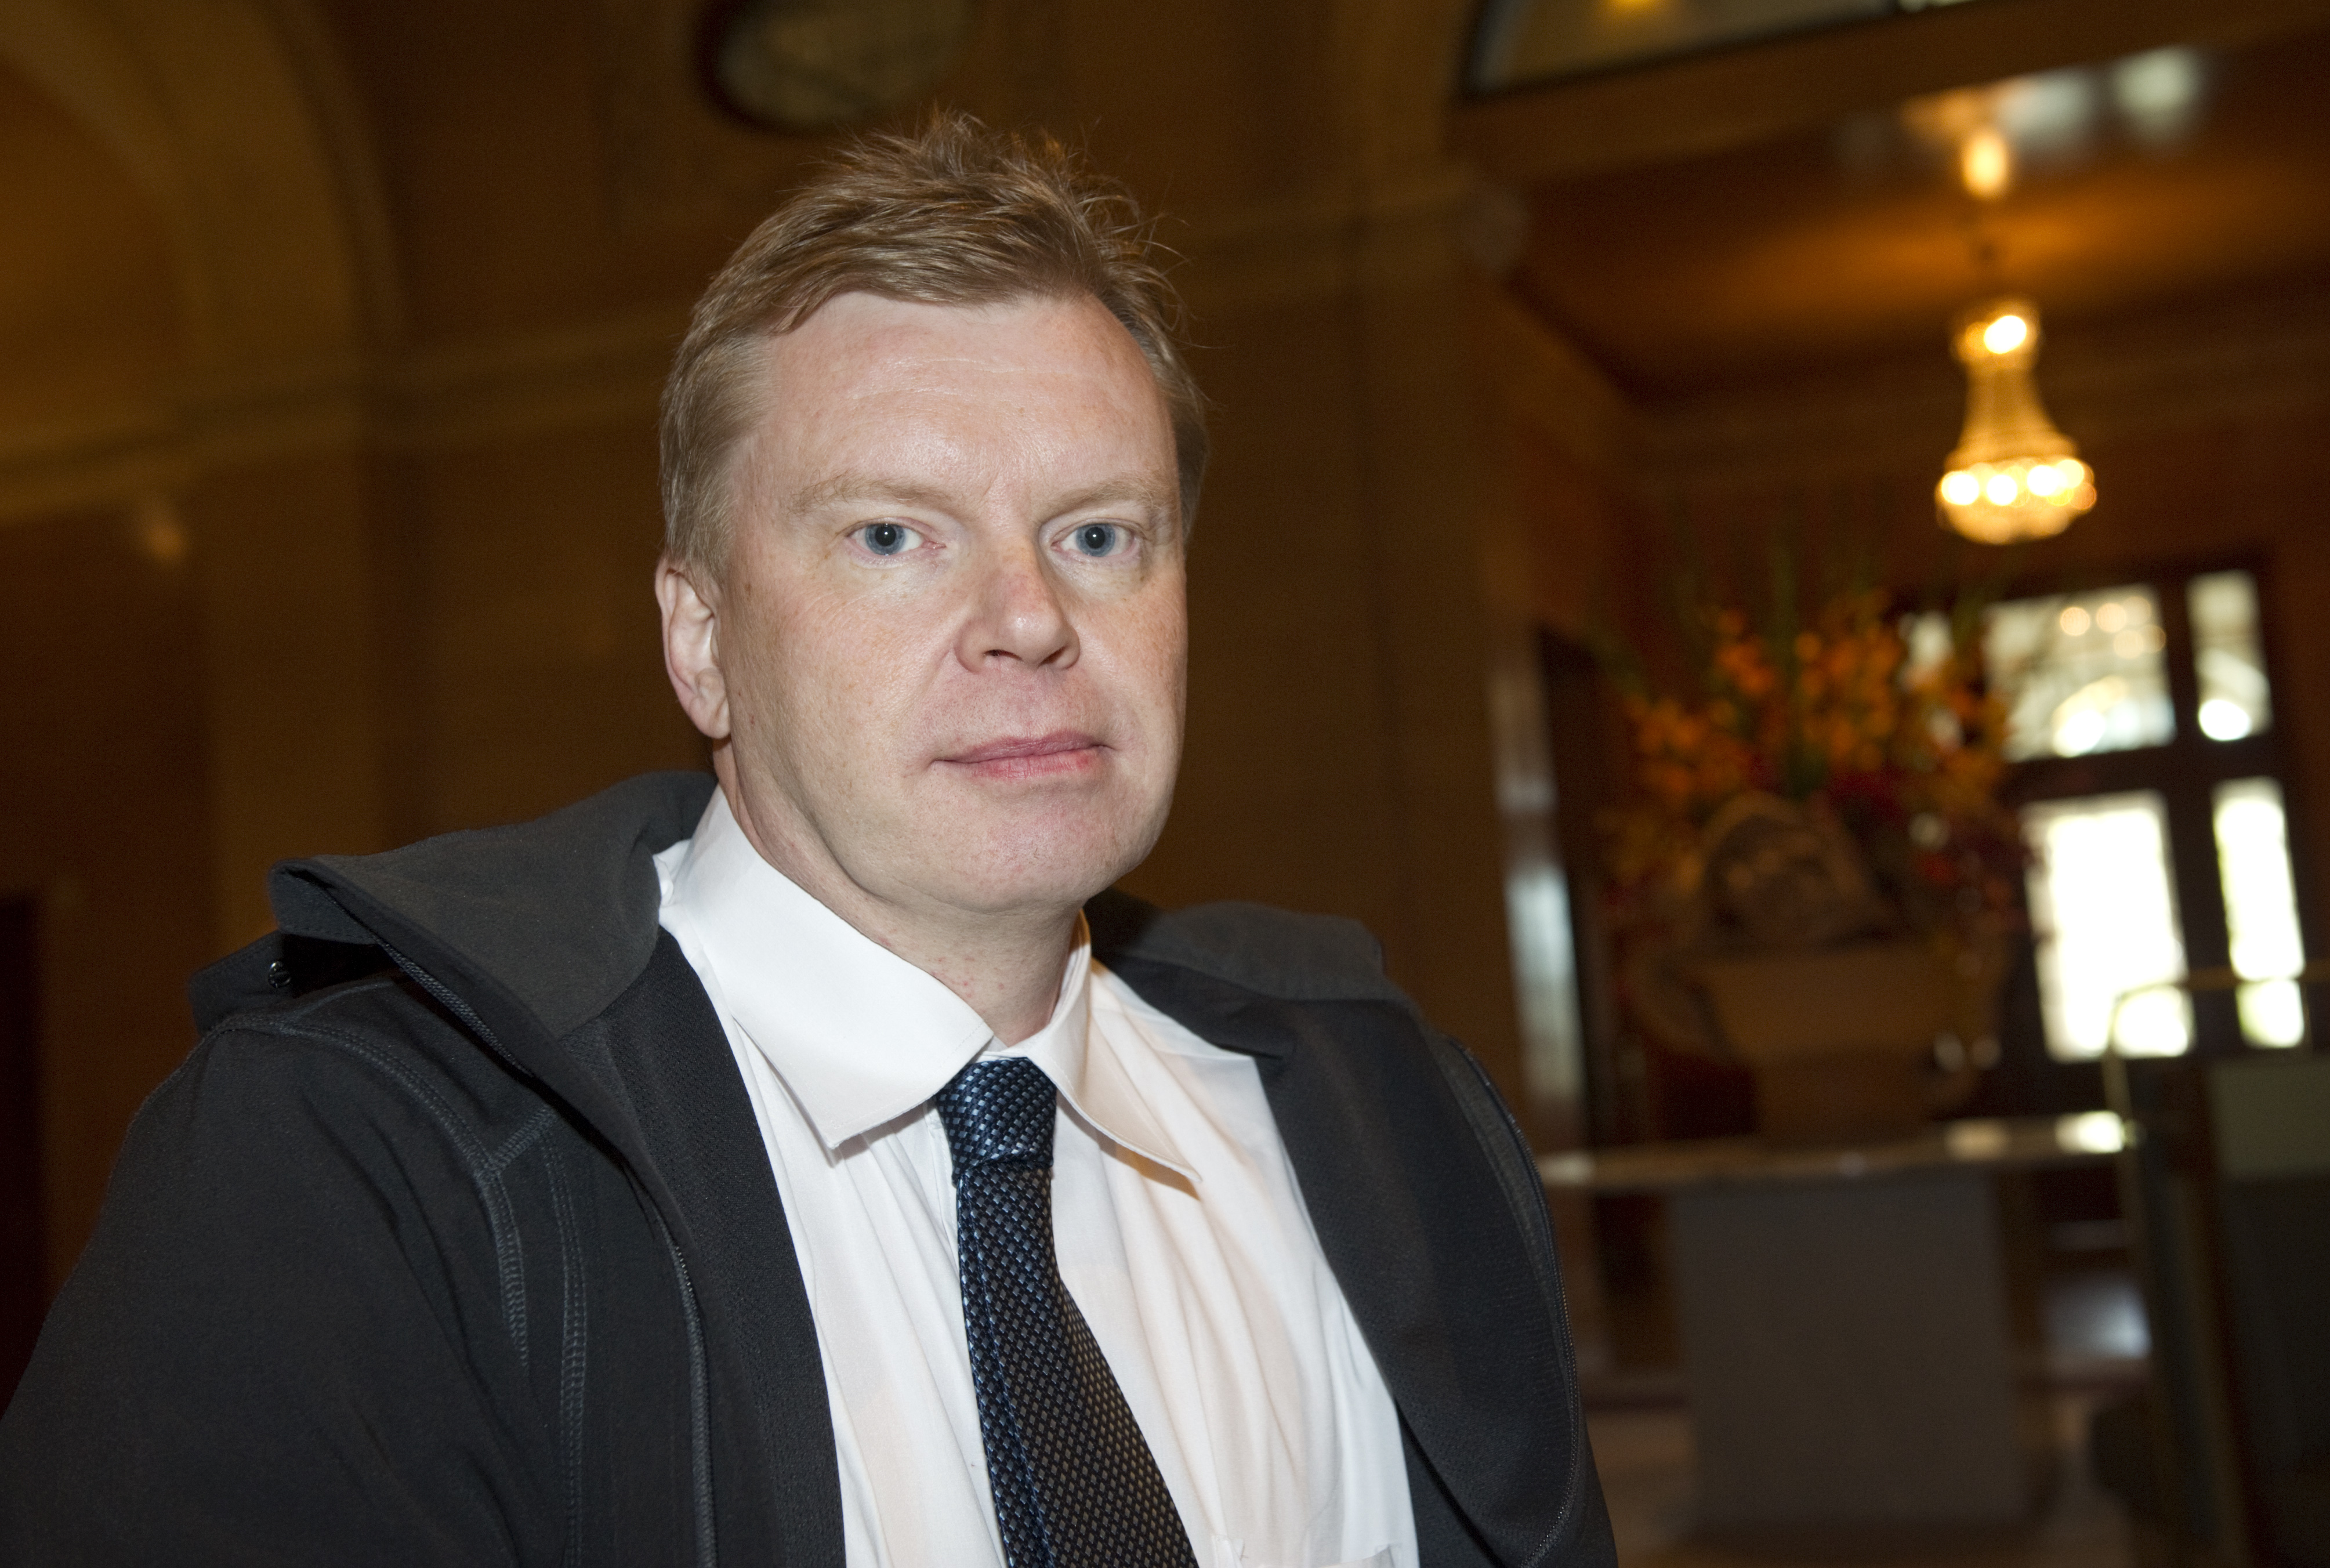 Lars Isovaaras konsultverksamhet har tillgångar på 400 000 kronor.